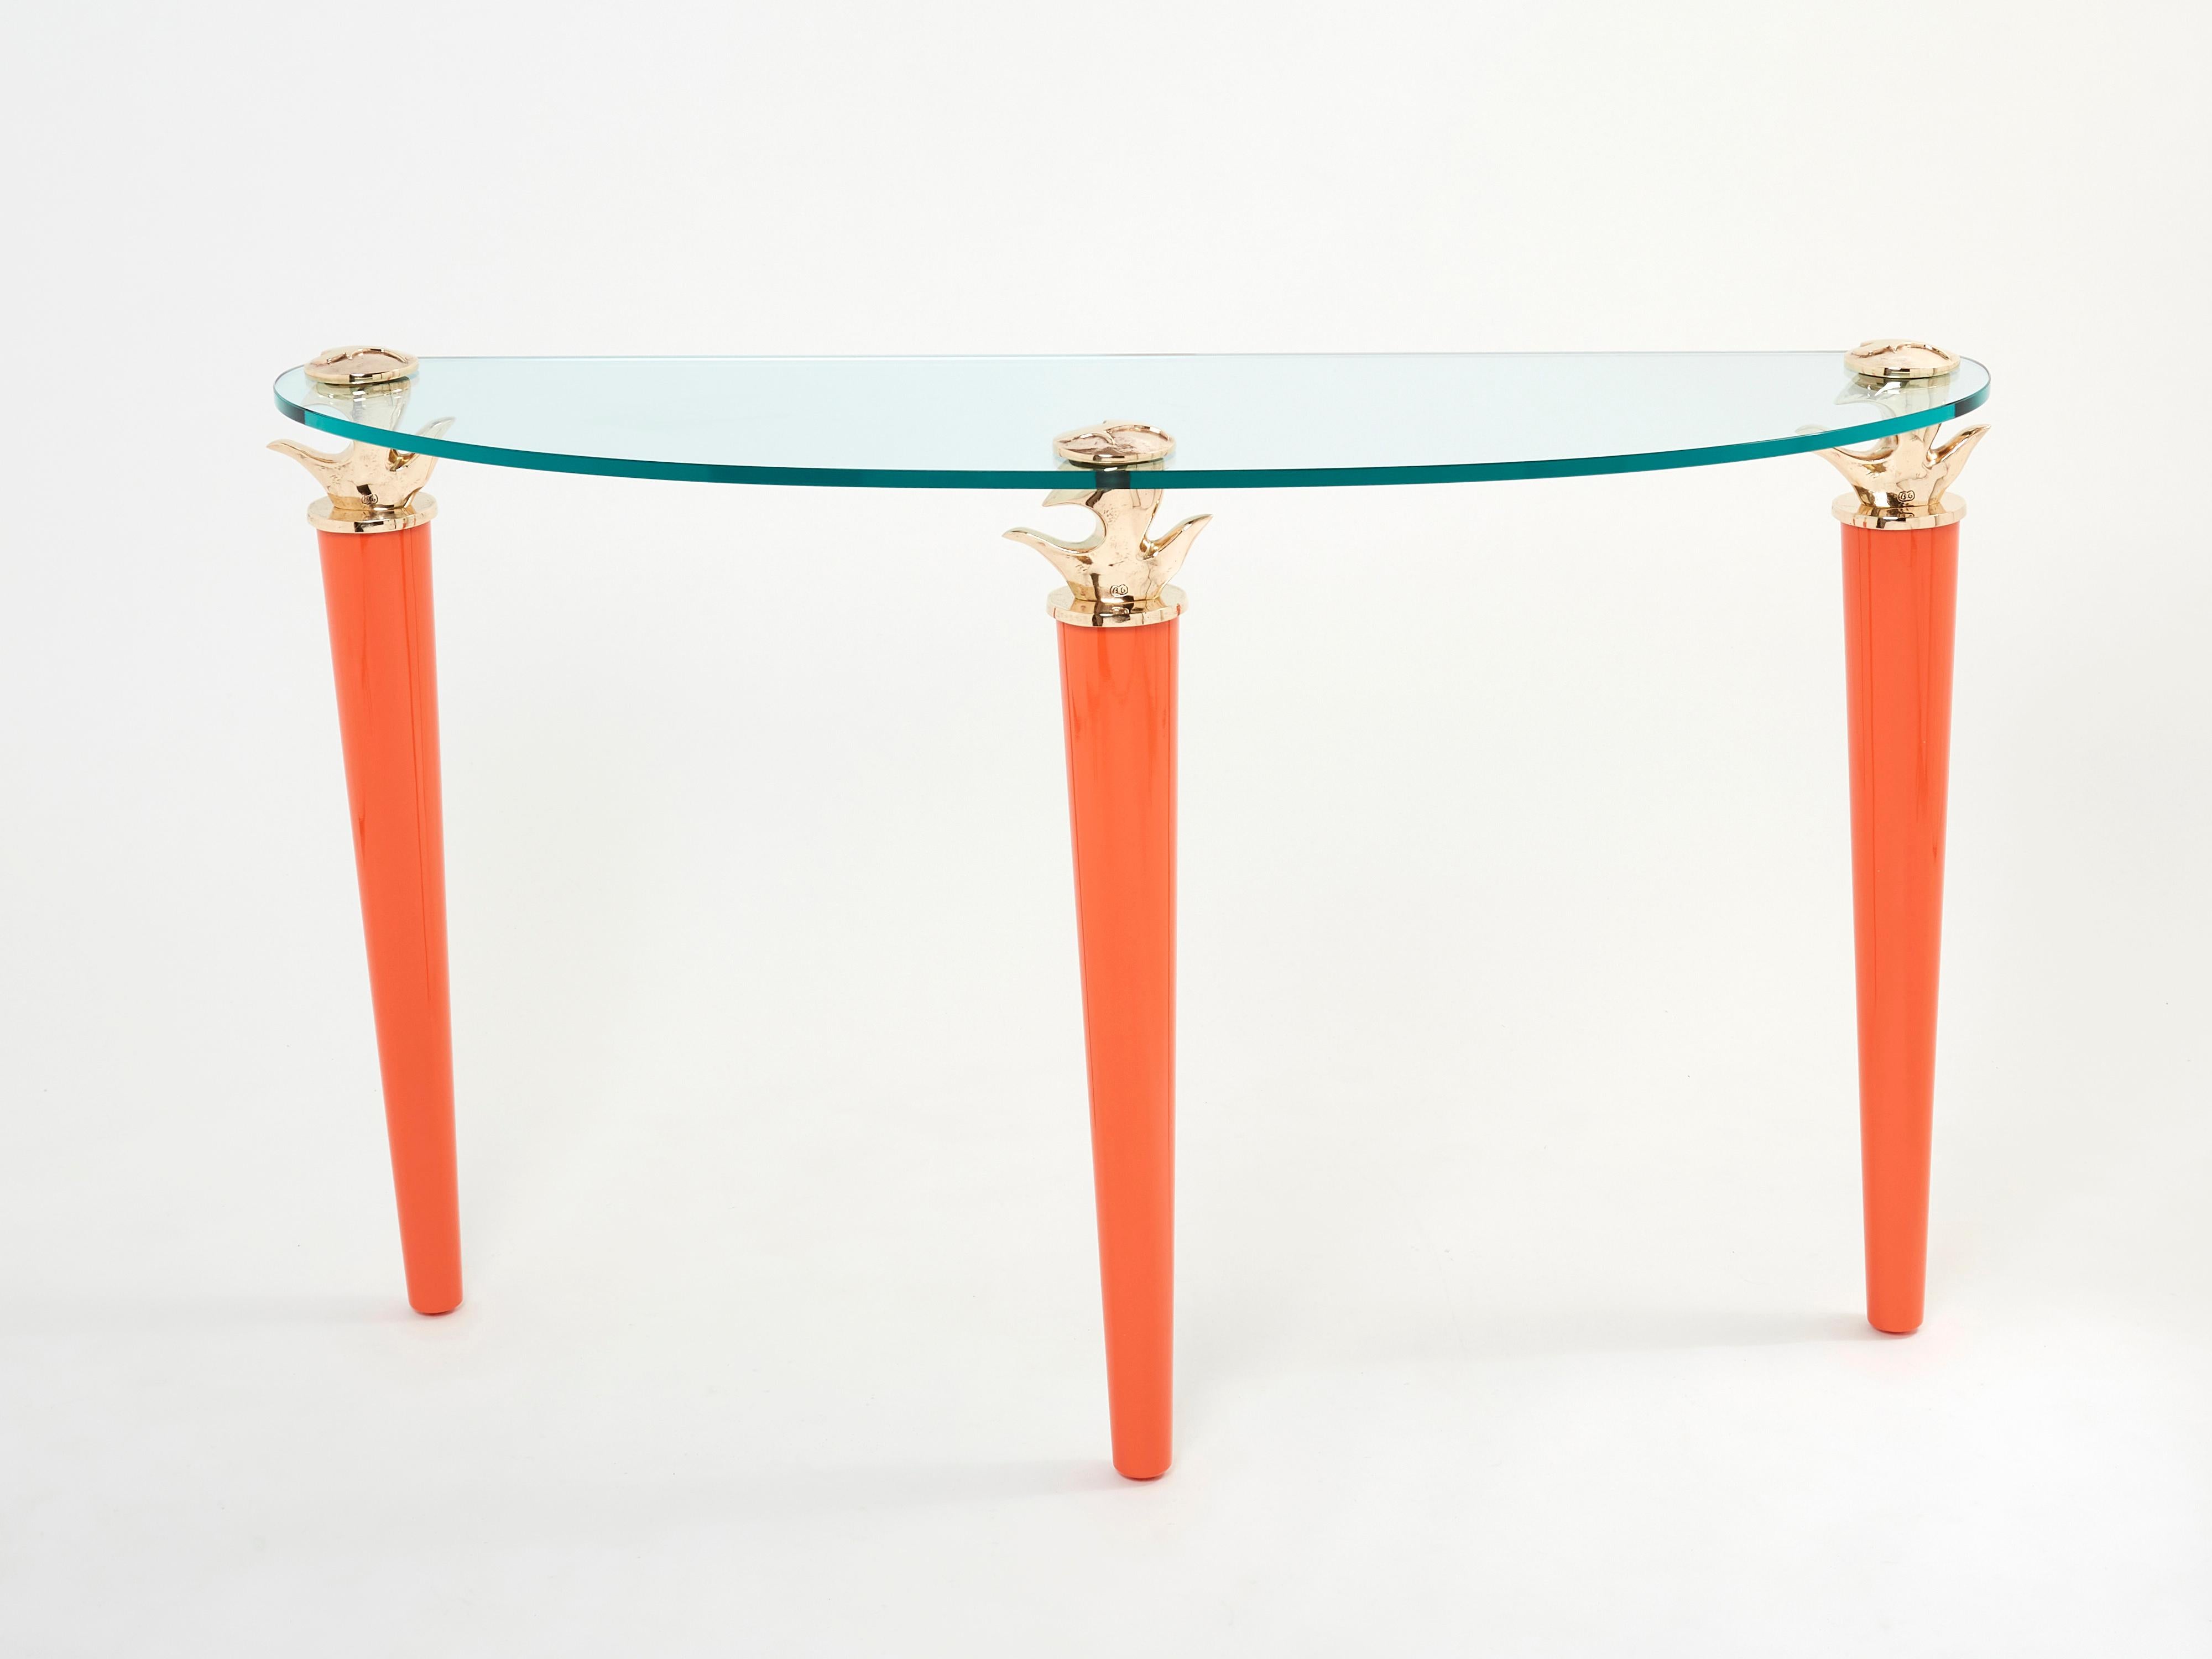 Seltener signierter Konsolentisch von Elizabeth Garouste & Mattia Bonetti, Modell Concerto, entworfen und hergestellt im Jahr 1995 von dem ikonischen Duo. Die drei großen Füße sind aus wunderschönem, orangefarben lackiertem Holz gefertigt und werden